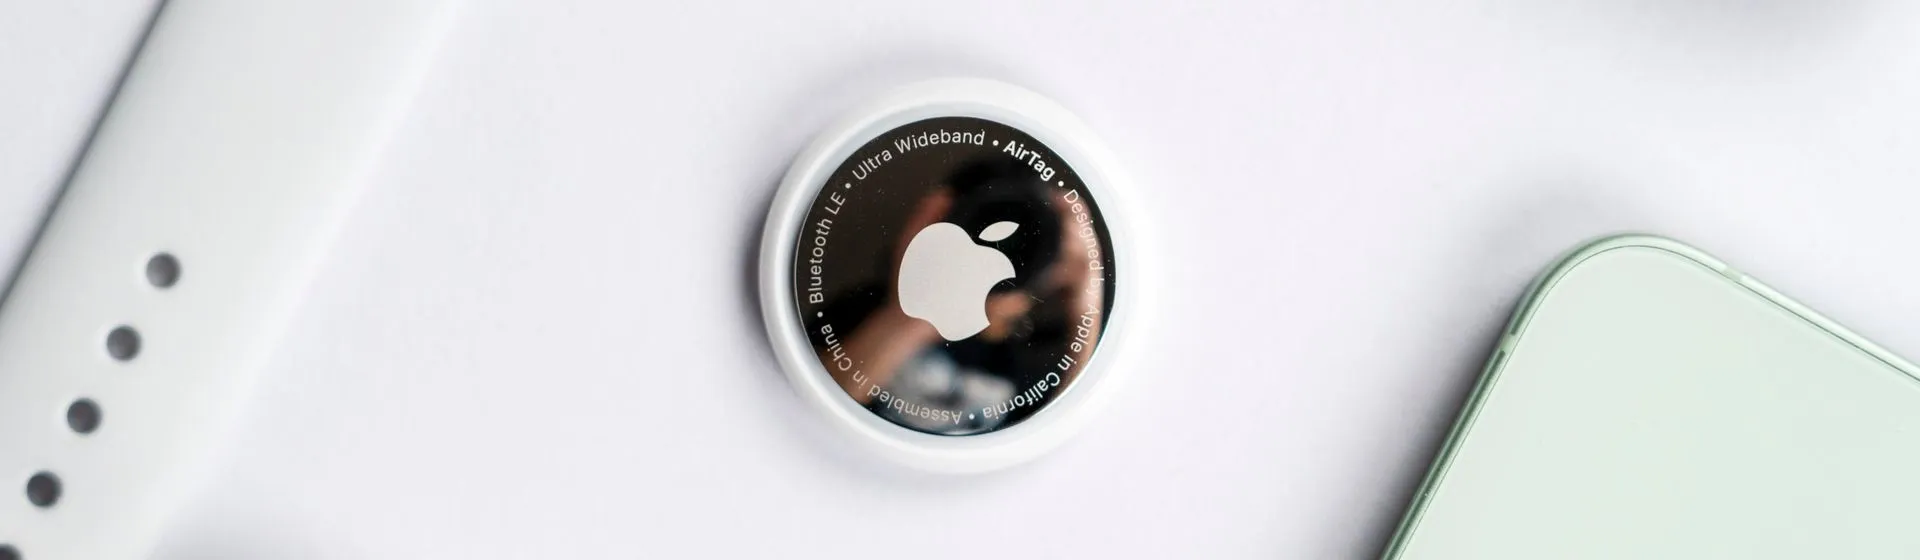 AirTag: tudo sobre o dispositivo rastreador da Apple